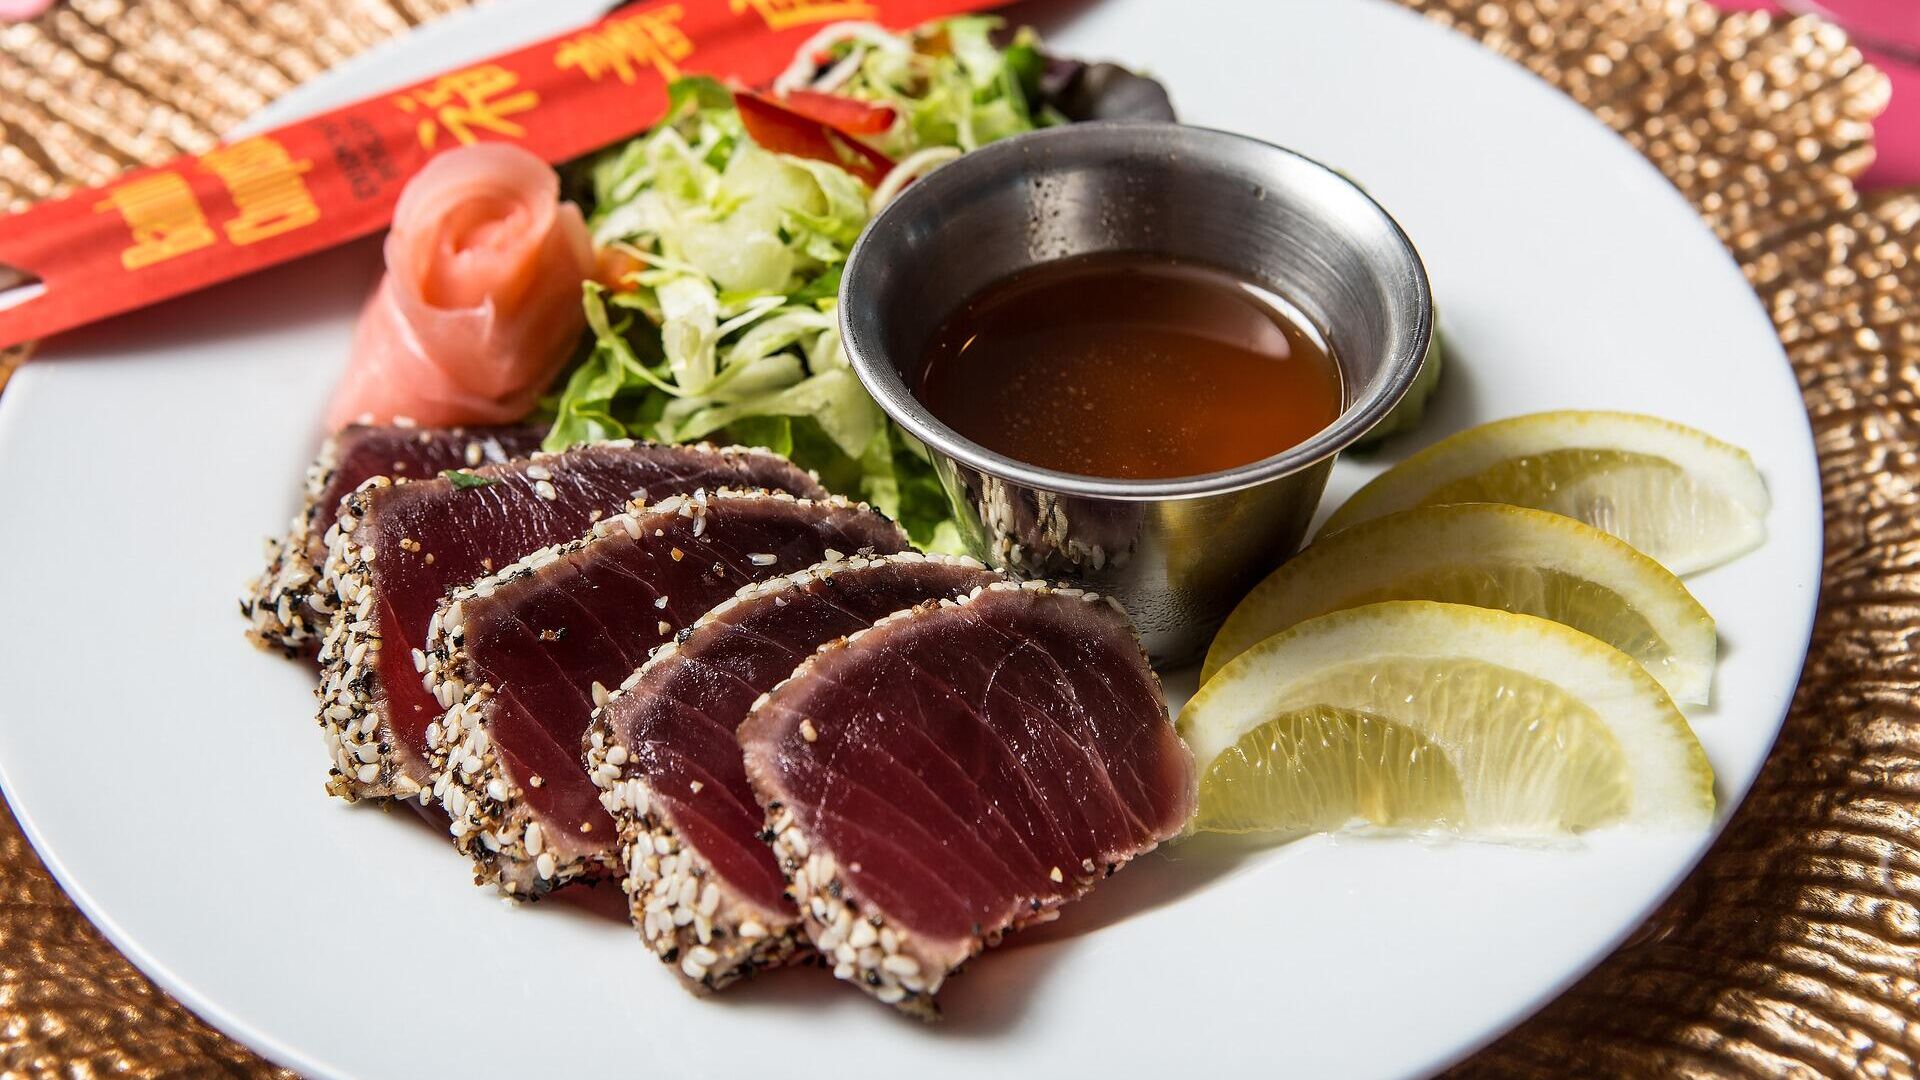 Салат с тунцом — рецепт с фото пошагово